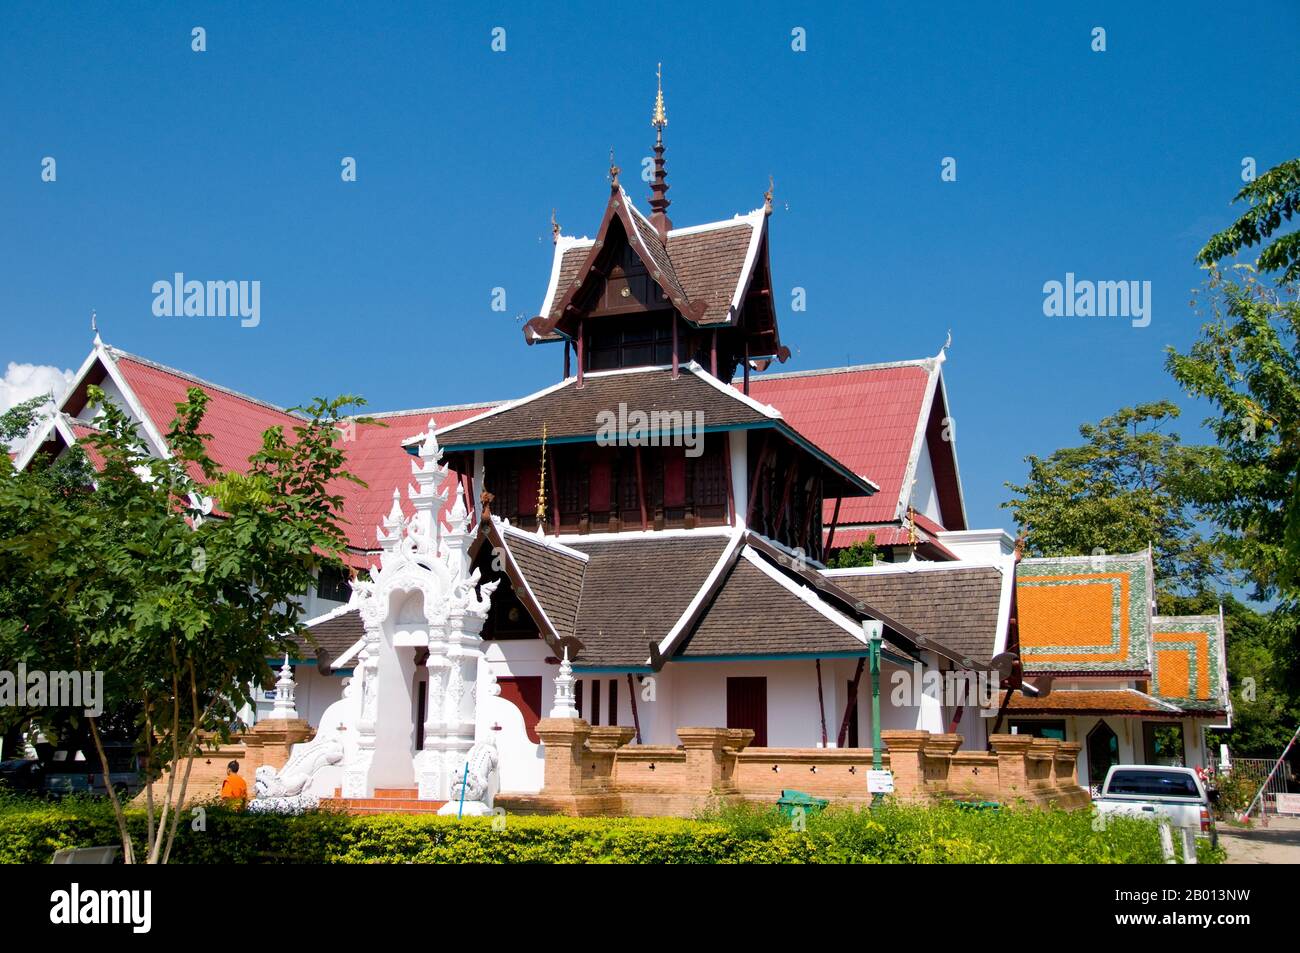 Thailand: Lanna-Stil Ucosot innerhalb des Wat Chedi Luang Komplexes, Wat Chedi Luang, Chiang Mai. Wat Chedi Luang übersetzt wörtlich aus dem Thailändischen als ‘Kloster der Großen Stupa’. Der Bau des Tempels begann am Ende des 14. Jahrhunderts, als das Königreich Lan Na in seiner Blüte stand. König Saen Muang Ma (1385-1401) beabsichtigte es als Ort eines großen Reliquienschreines, um die Asche seines Vaters, König Ku Na (1355-85), zu vereinigen. Heute ist es der Ort der Lak Muang oder Stadtsäule. Die jährliche Inthakin-Zeremonie findet innerhalb der Grenzen des Tempels statt. Stockfoto